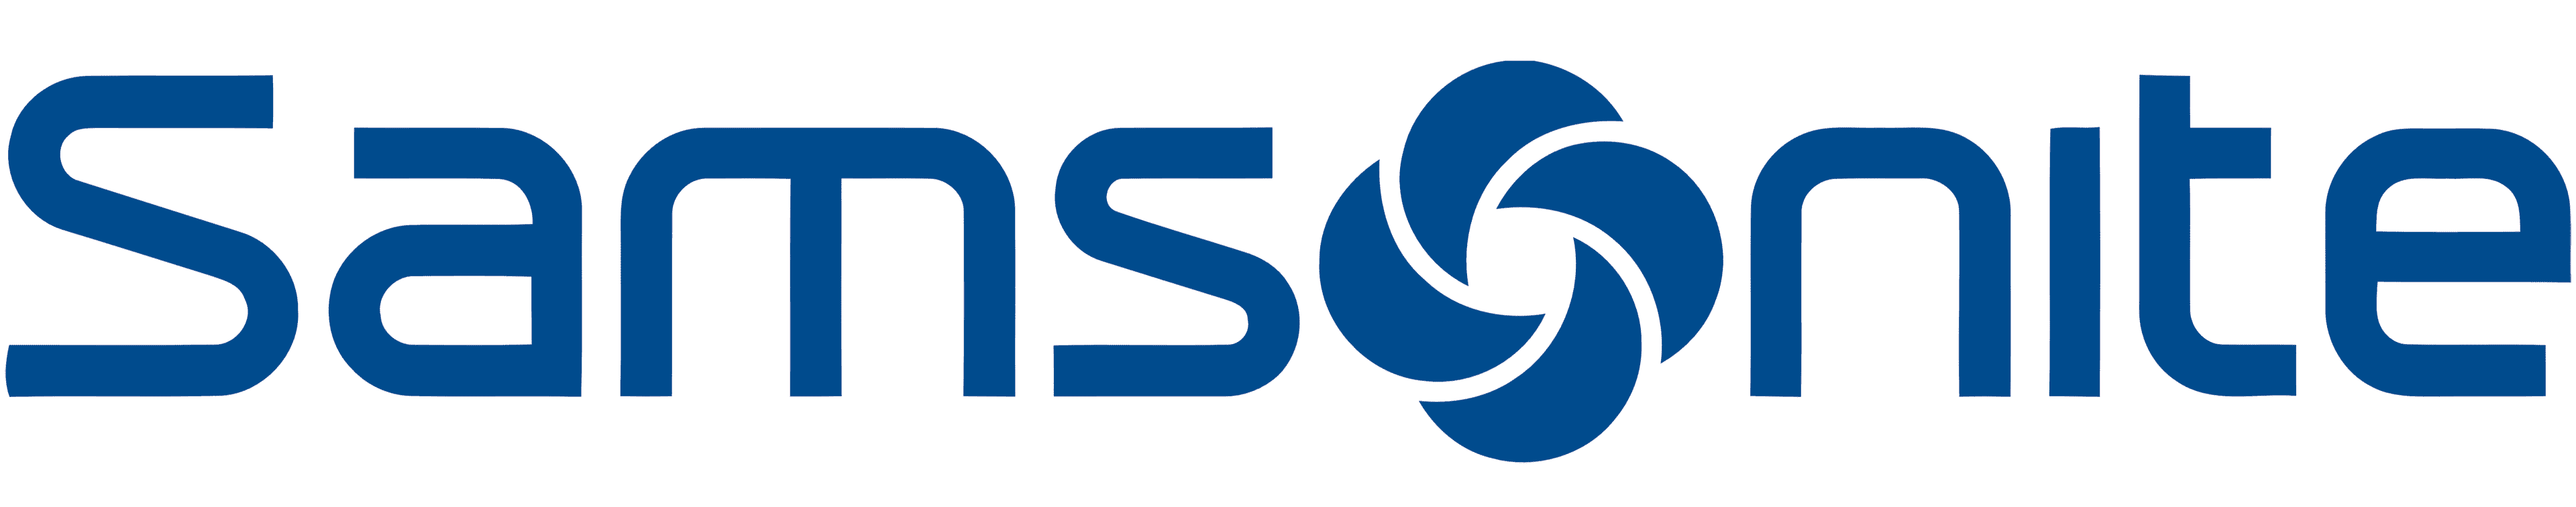 samsonite logo-1